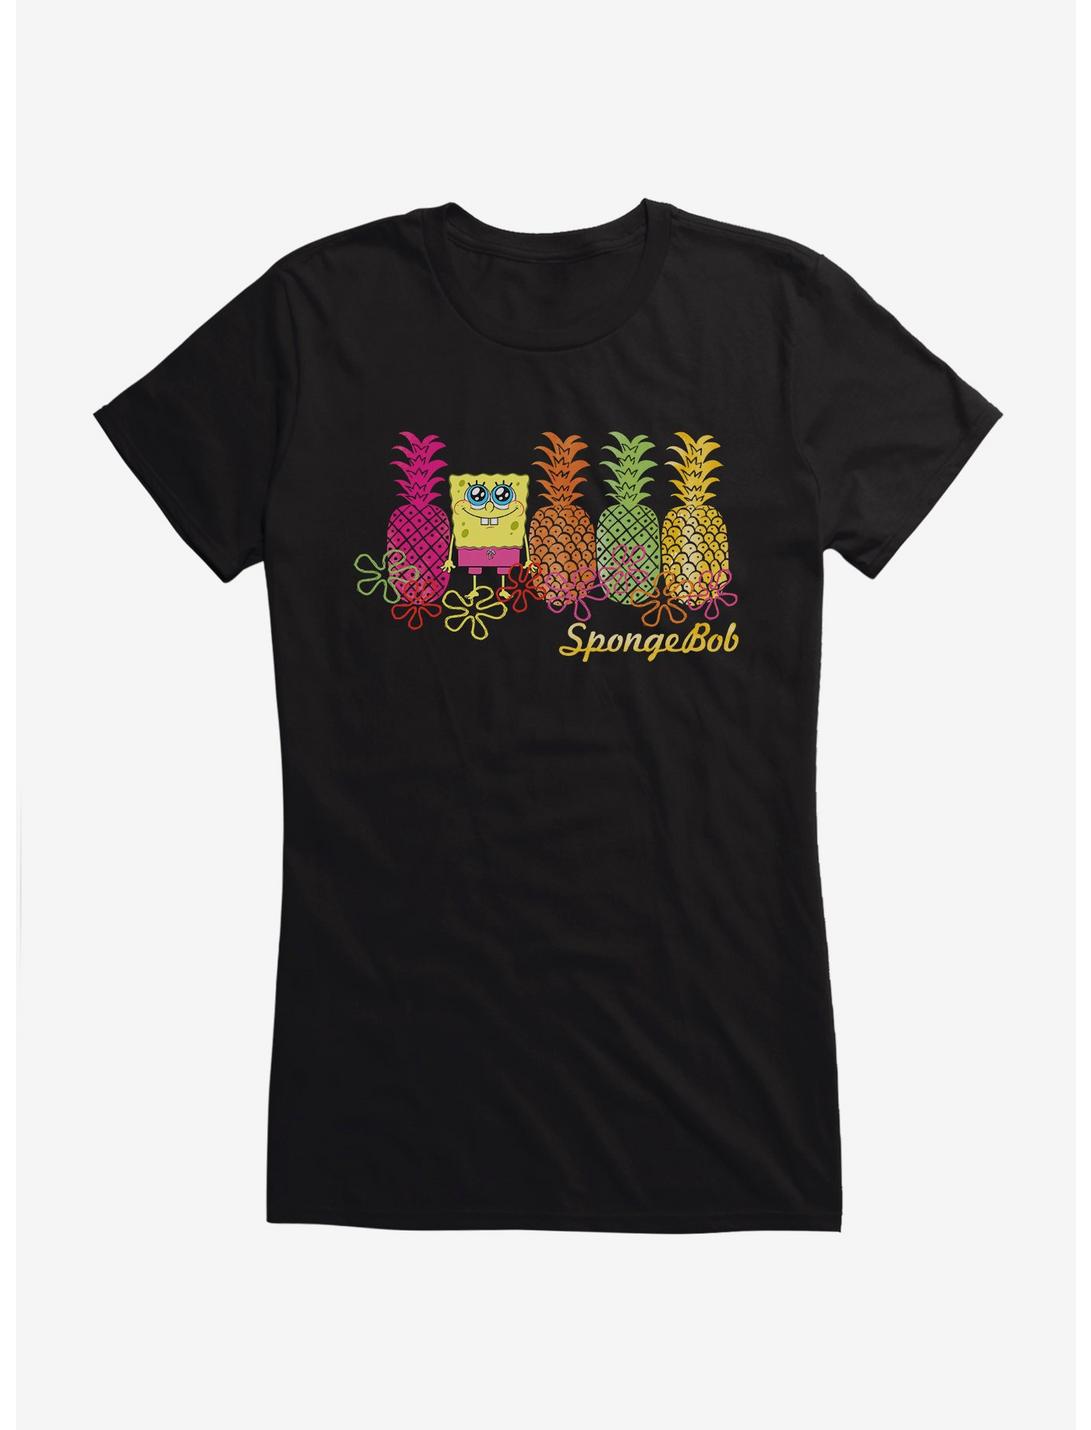 SpongeBob SquarePants Pineapple Lineup Girls Black T-Shirt, BLACK, hi-res